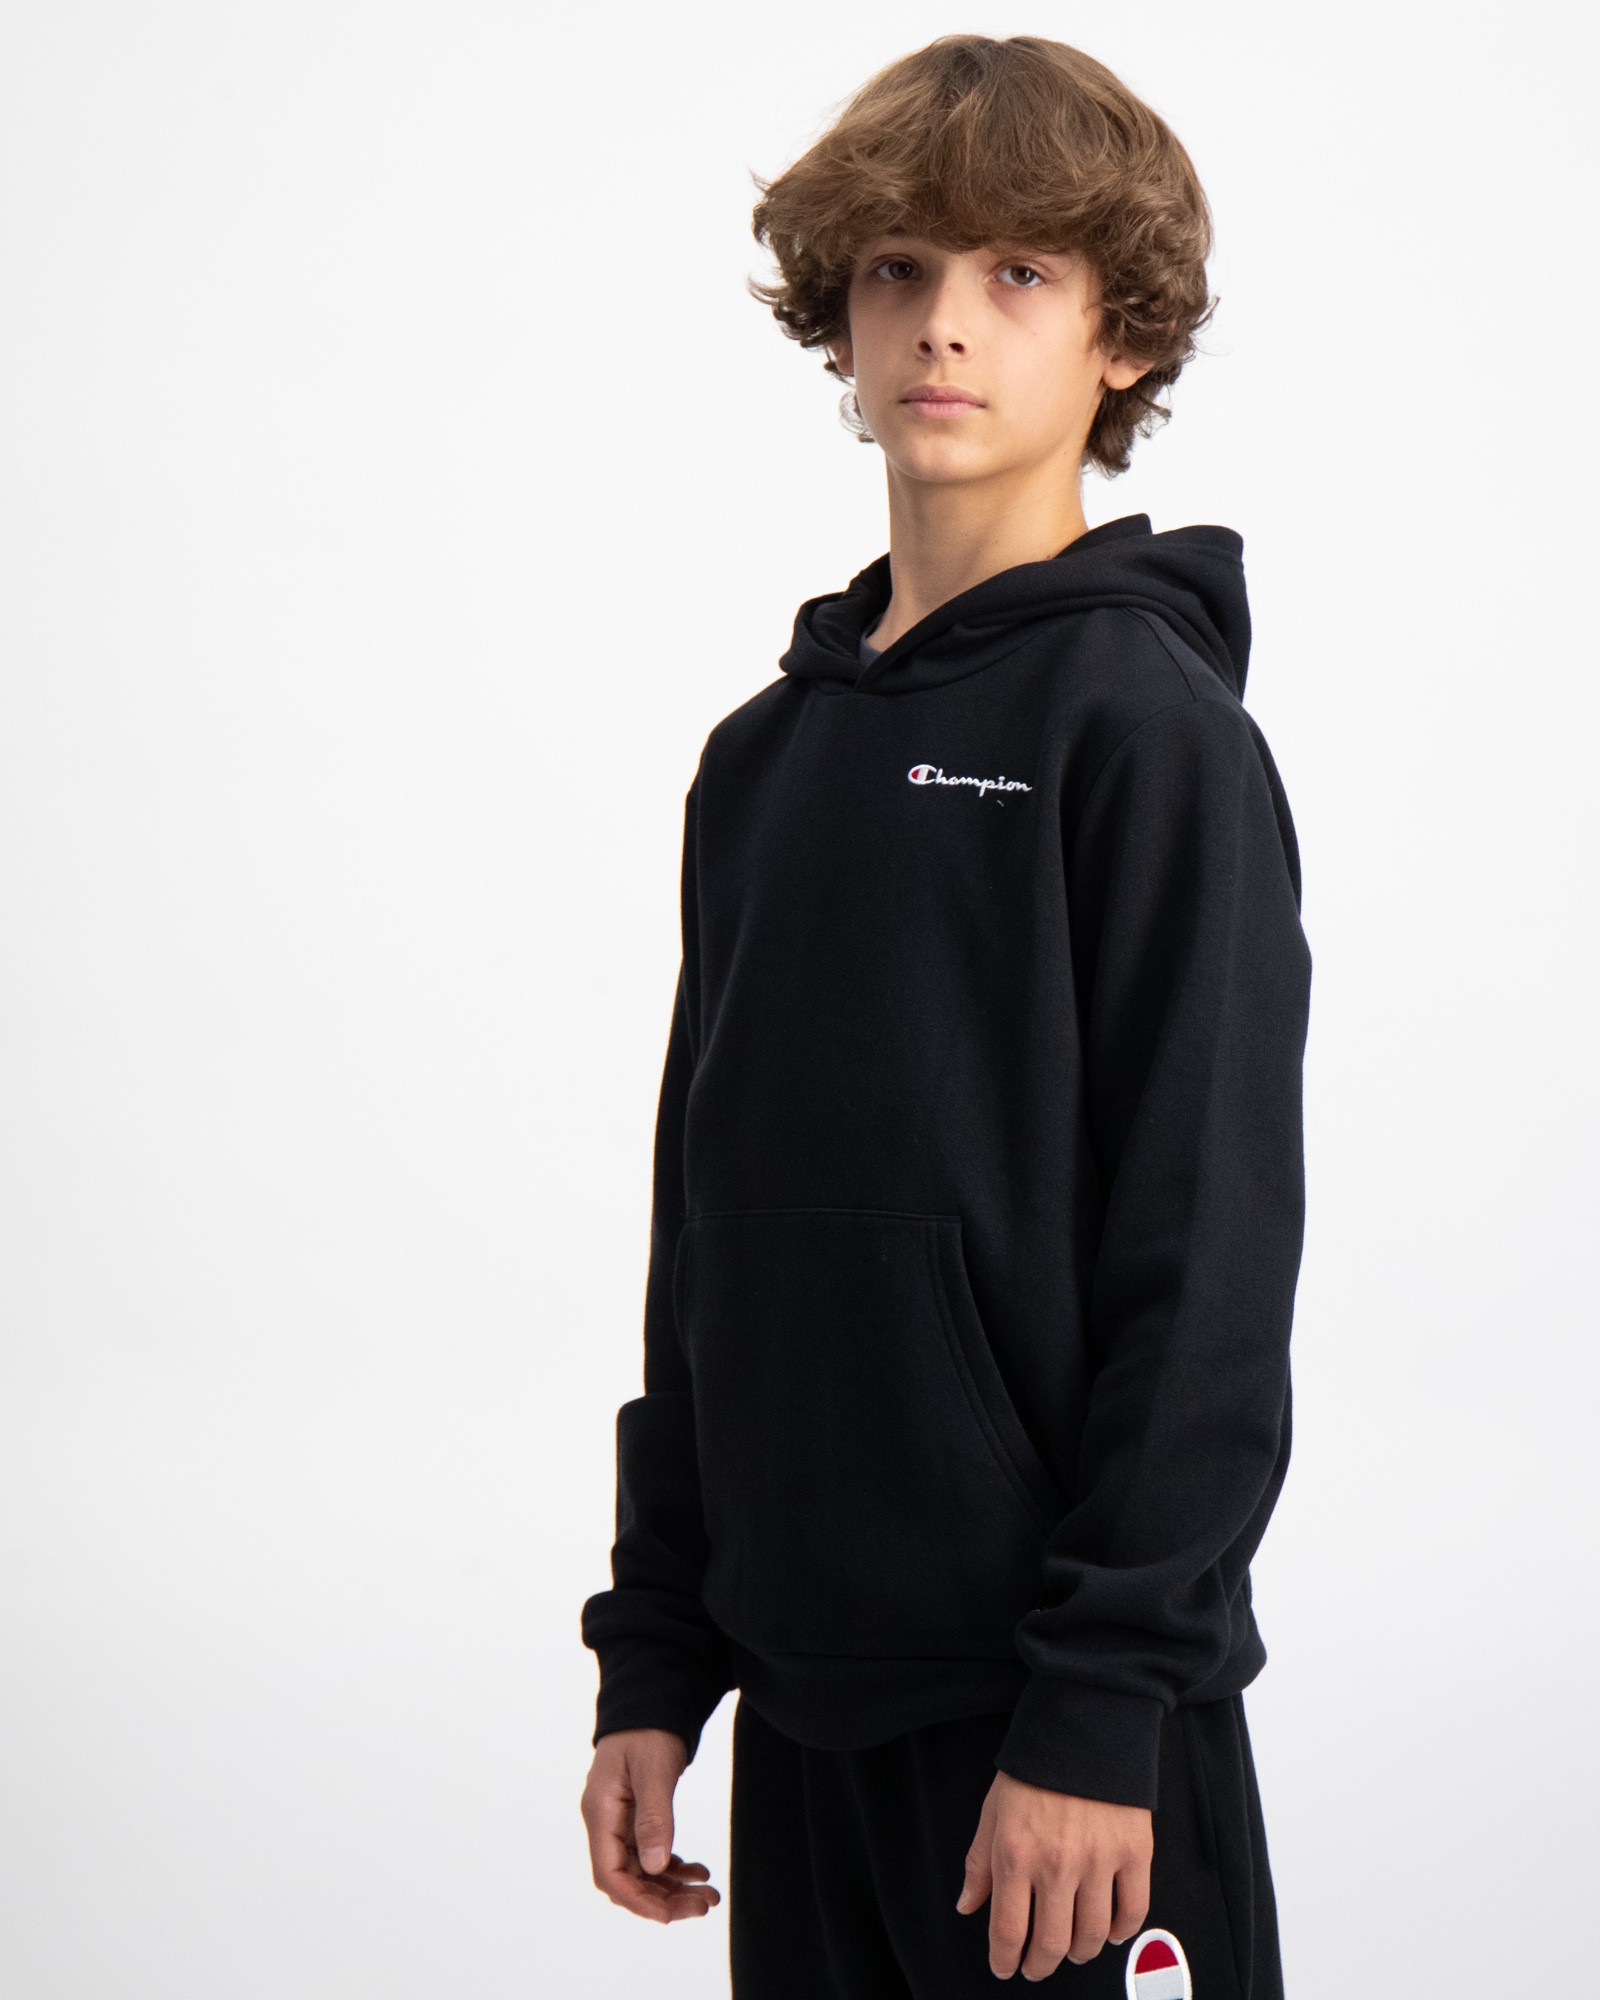 Kids | Store für Hooded Schwarz Sweatshirt Brand Jungen